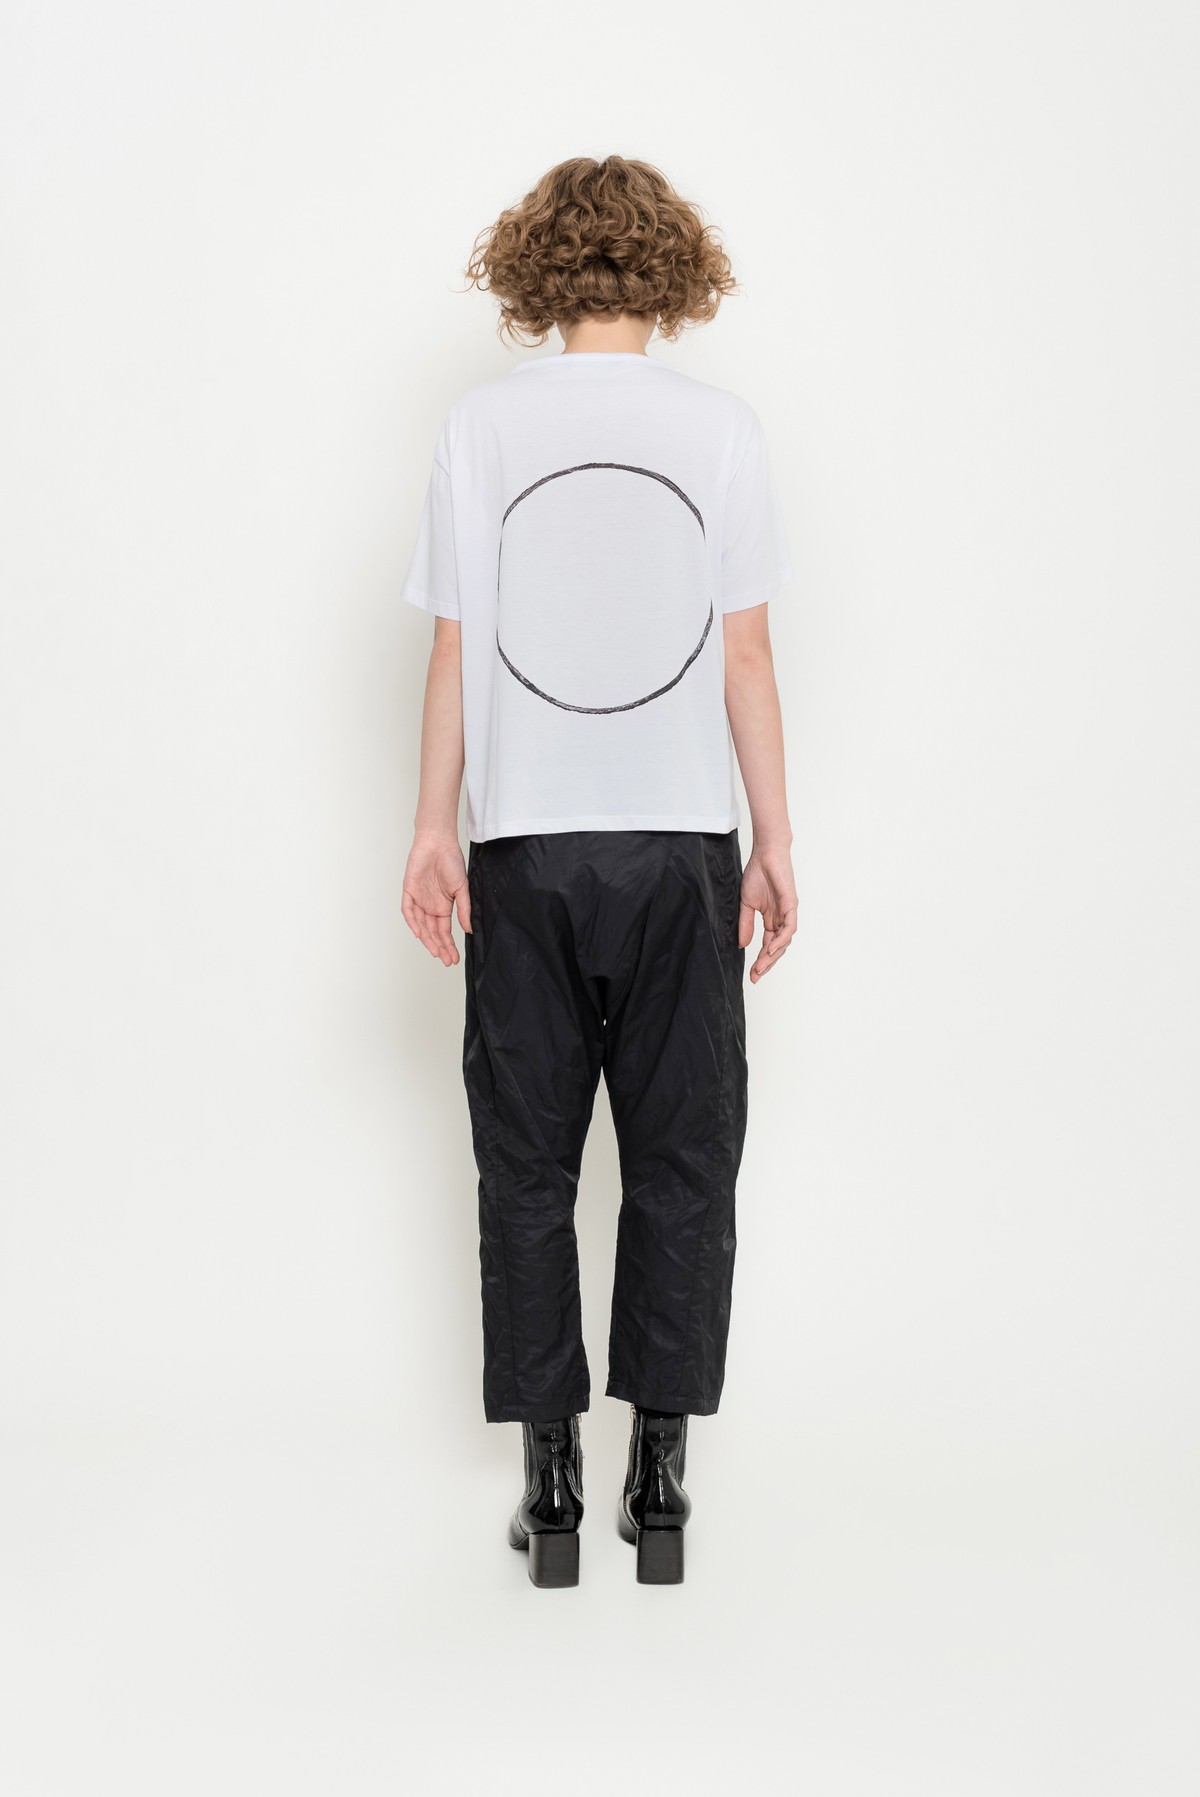 camiseta em algodão pima e desenho geométrico